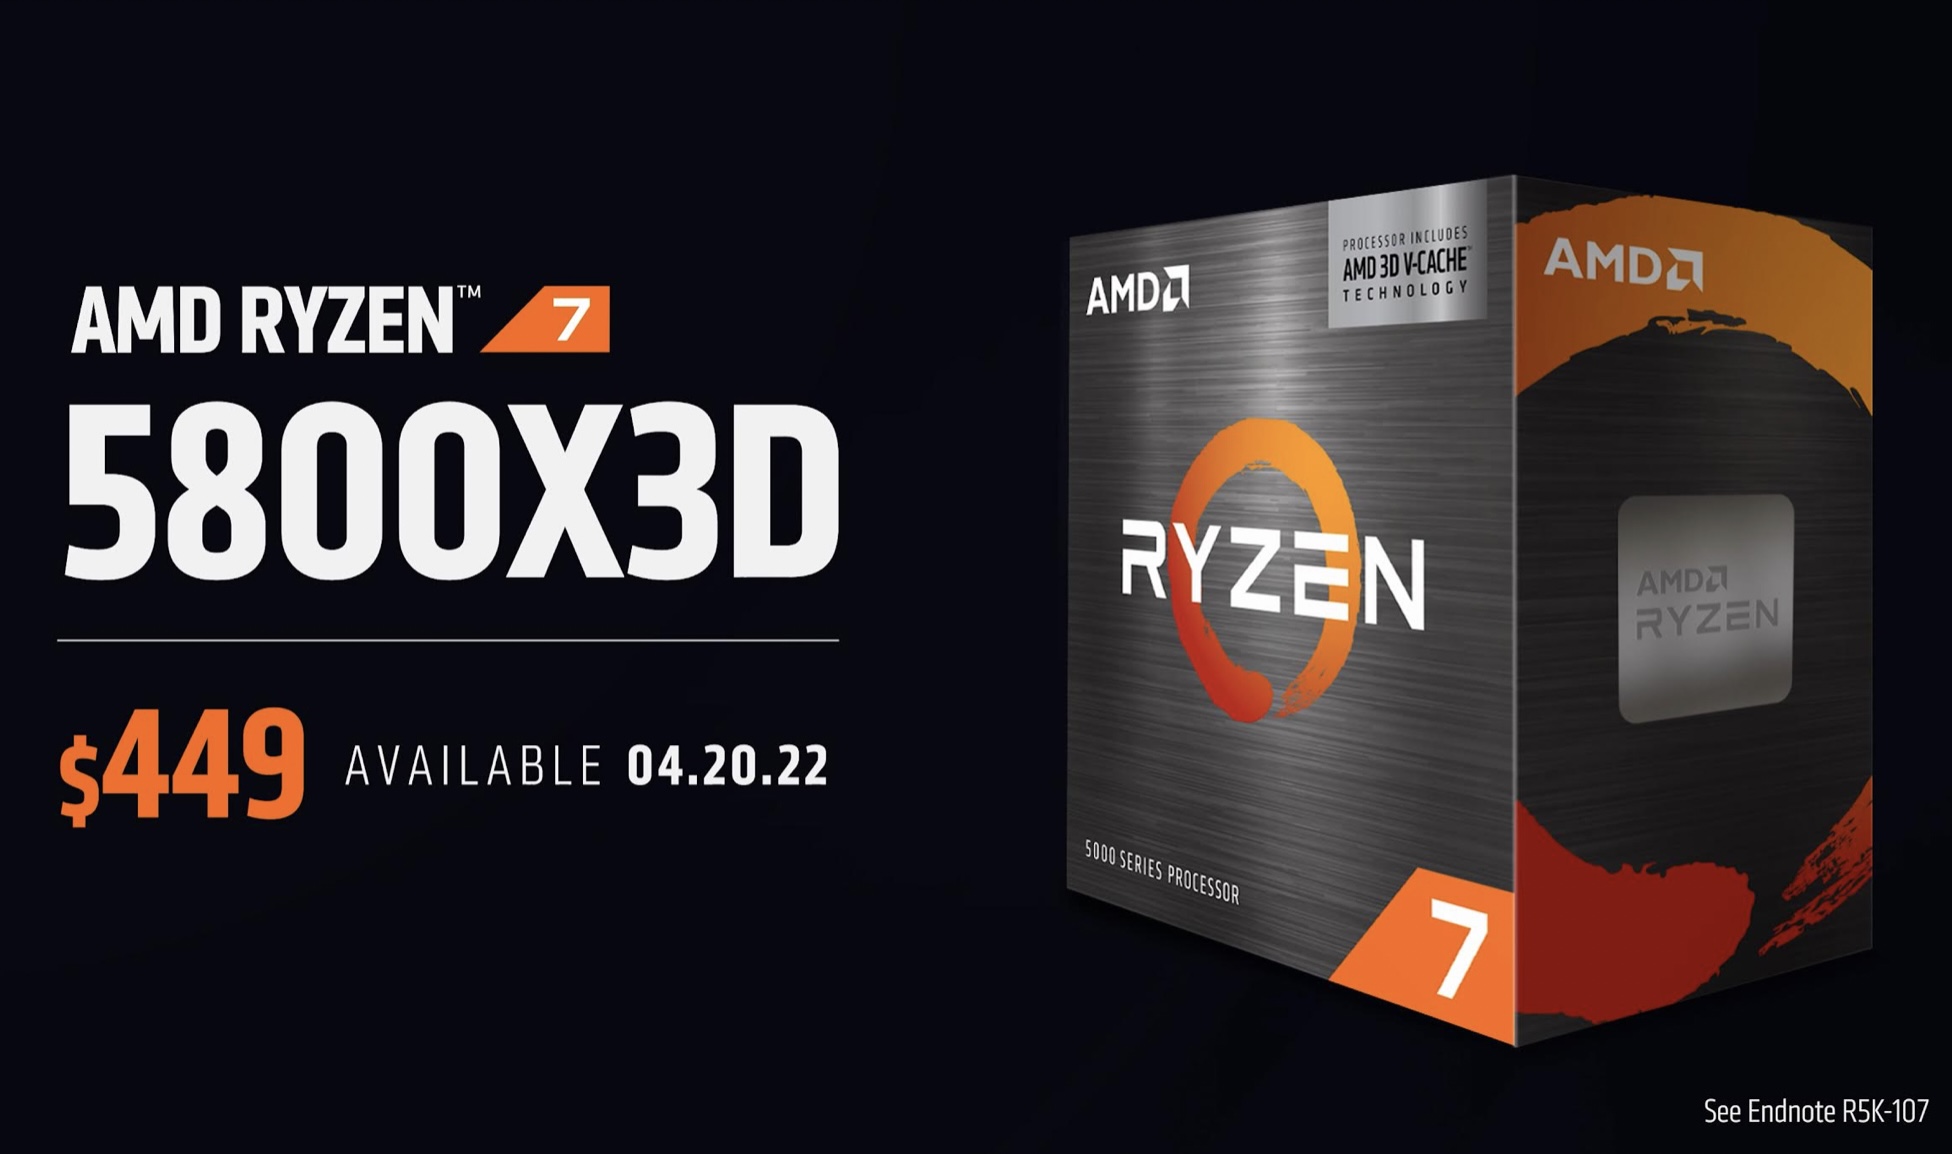 AMD Umumkan Ketersediaan Ryzen 7 5800X3D dan Prosesor Desktop Ryzen Terbaru Lainnya